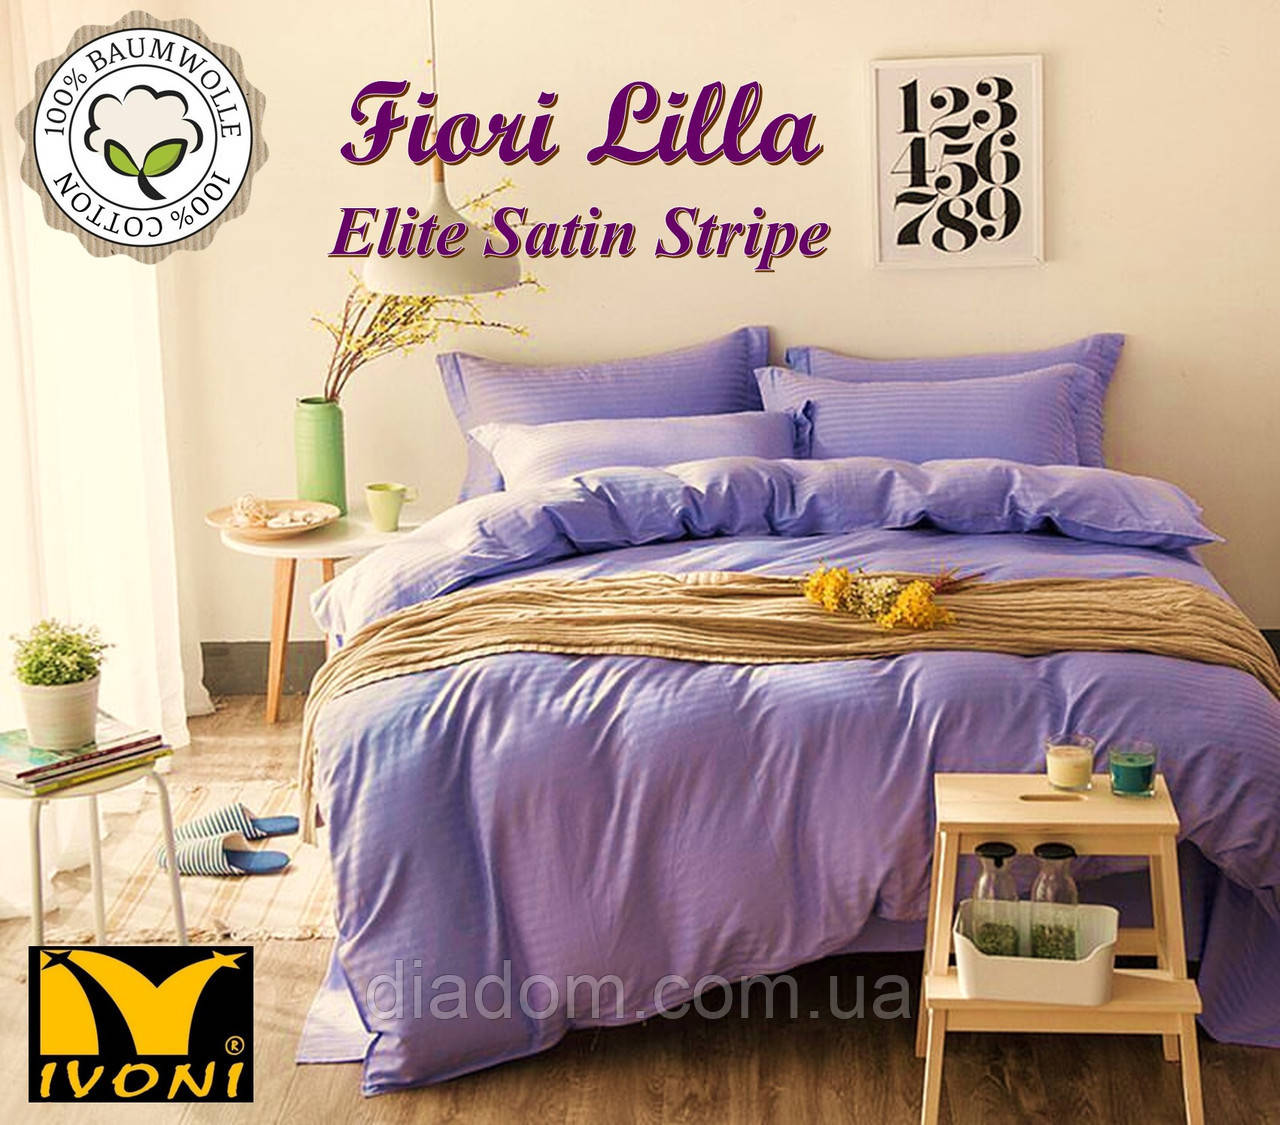 Комплекти постільної білизни Колекції "Elite Satin Stripe 8х8 mm Fiori Lilla". Страйп-Сатин (Туреччина). Бавовна 100%.